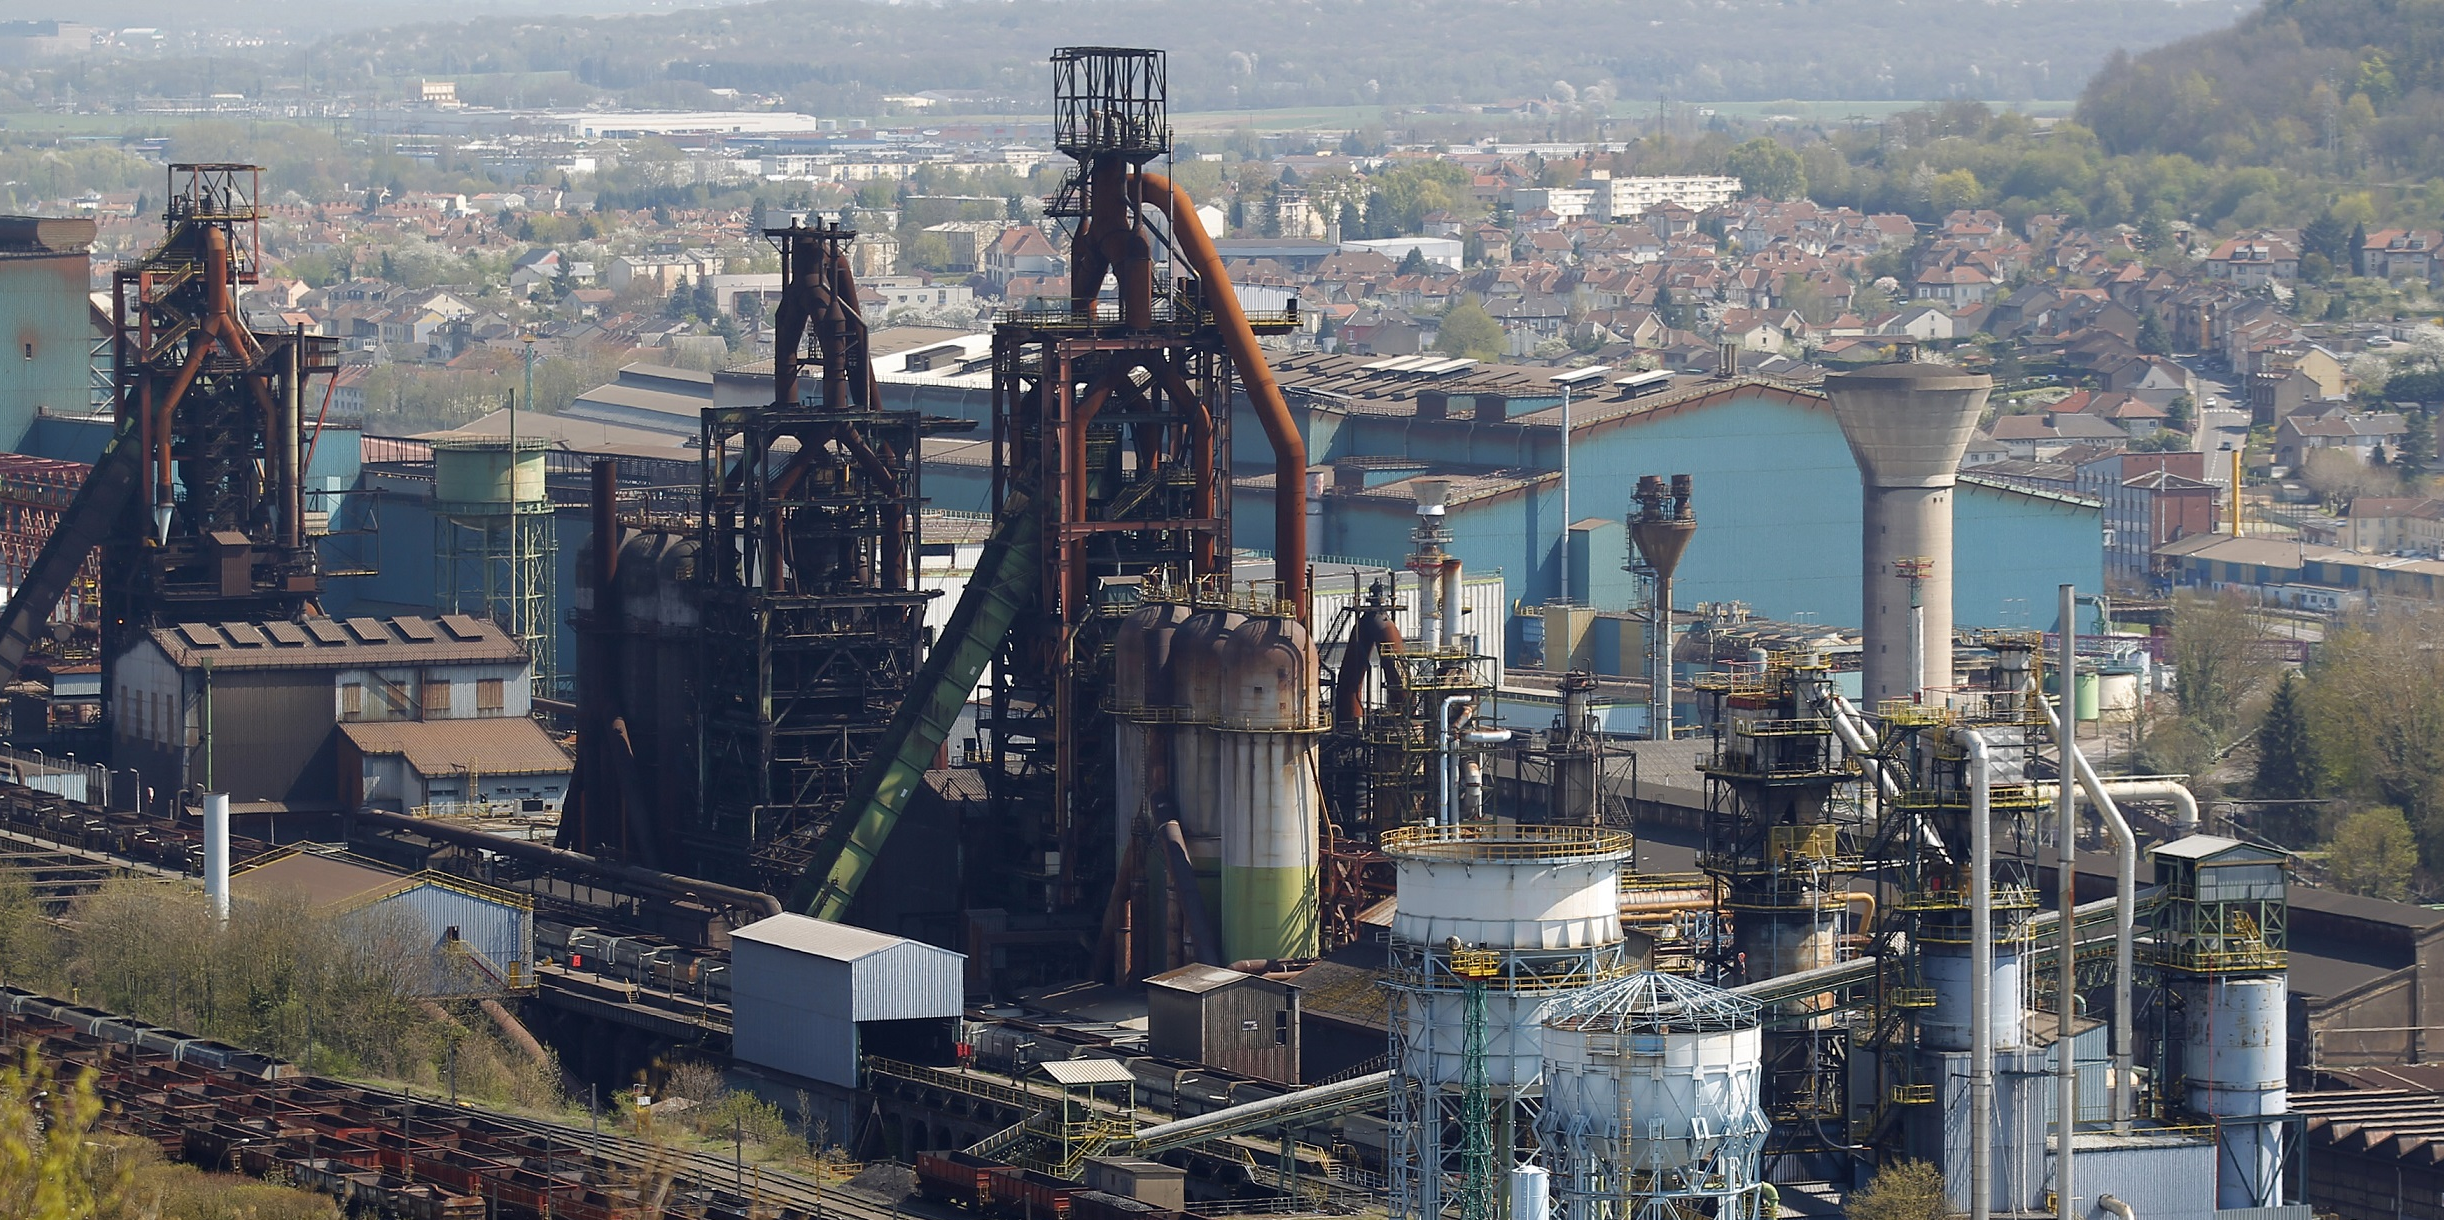 Arcelor se dispara pese a sus pérdidas gracias a Italia y la guerra comercial